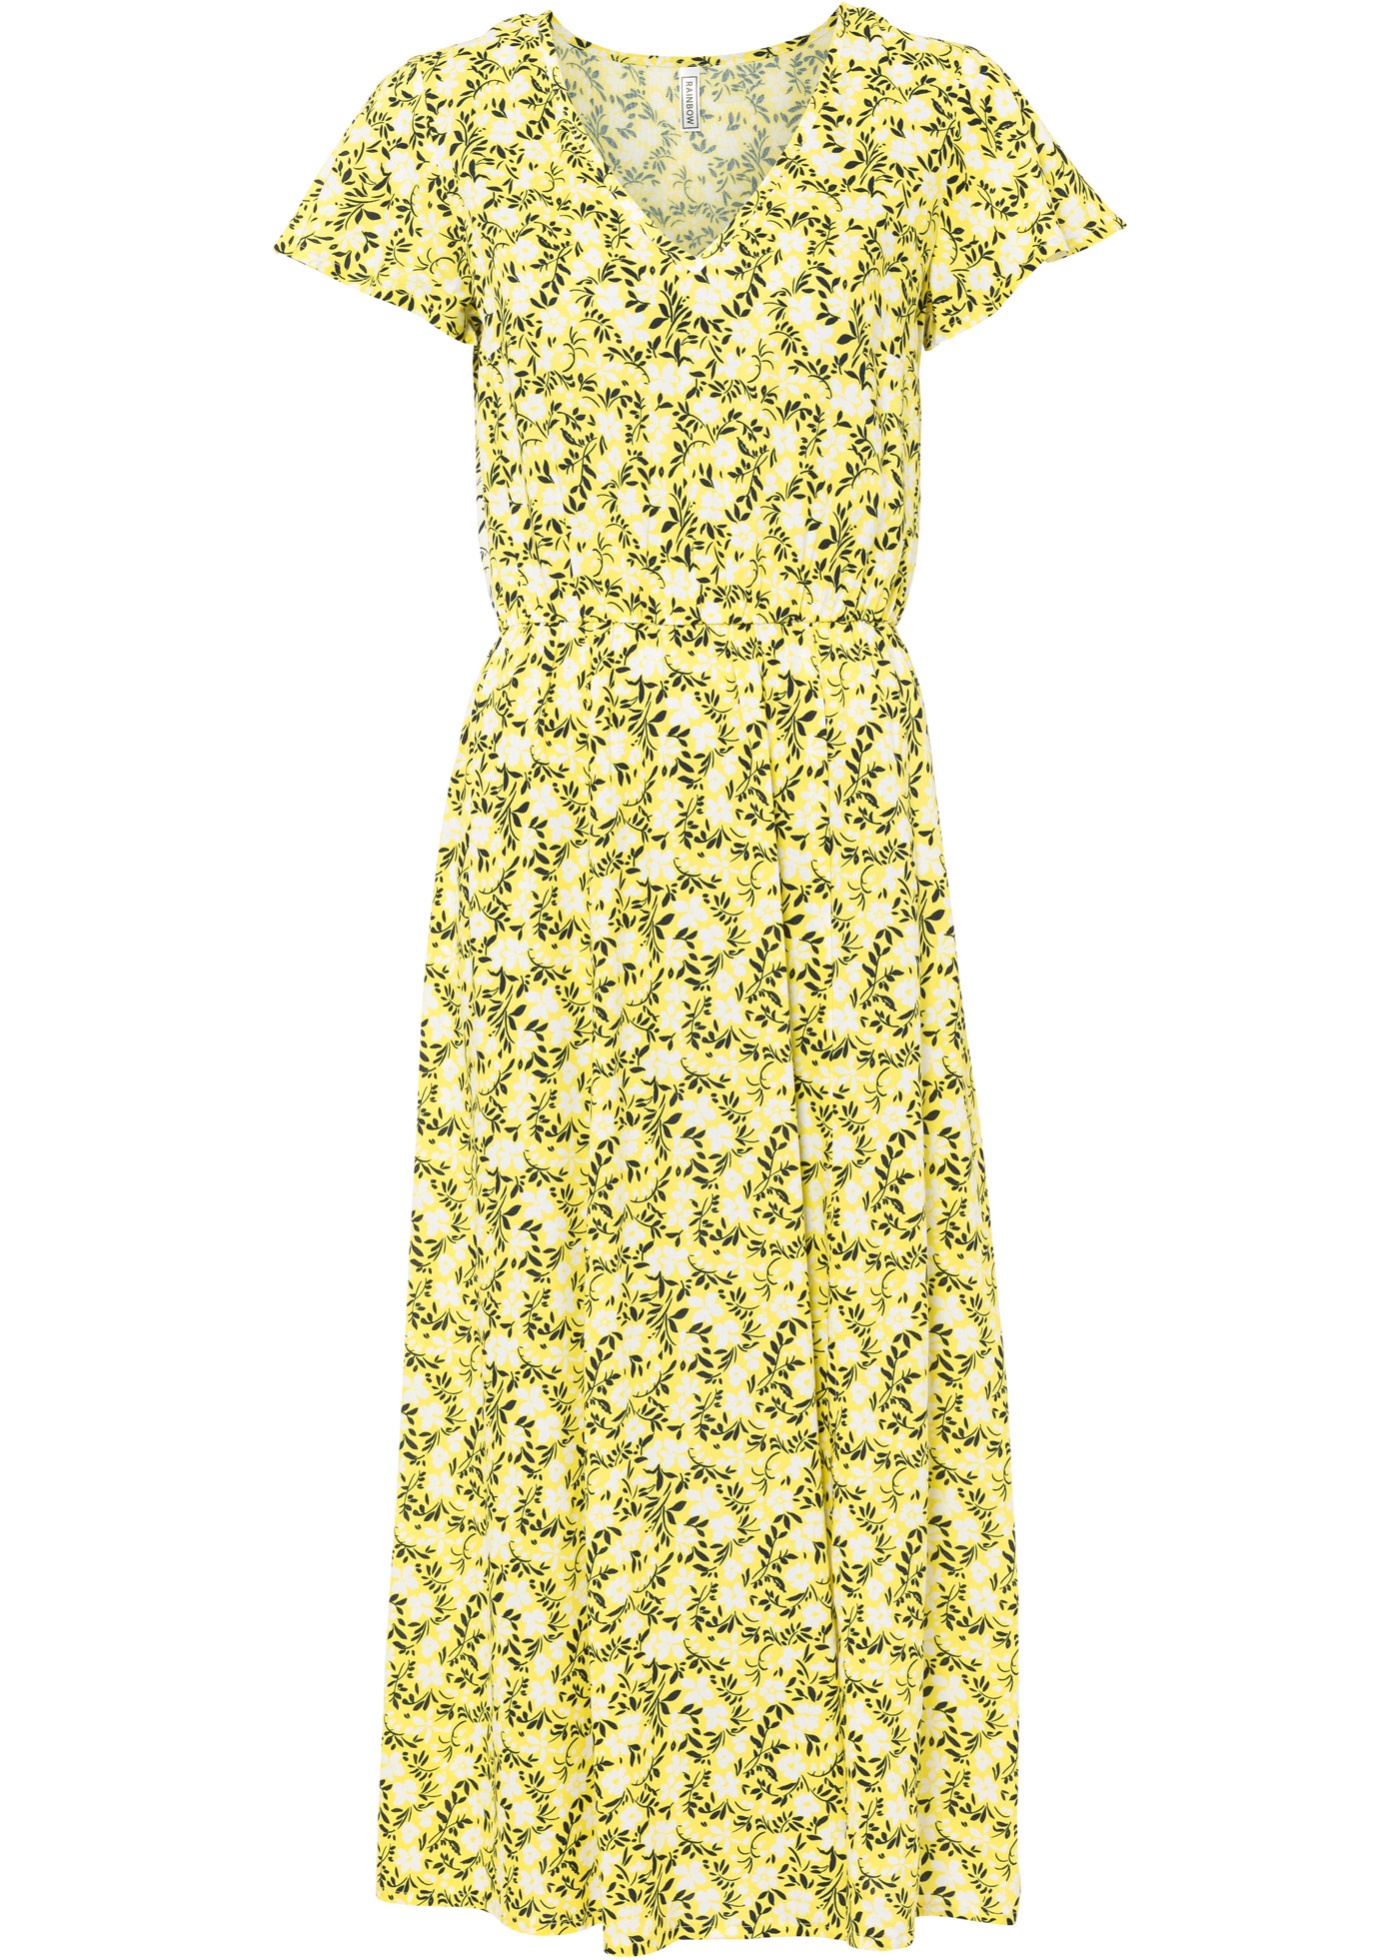 Geblümtes, wadenlanges Kleid mit kurzen Ärmeln (92601095) in ananasgelb/weiß geblümt